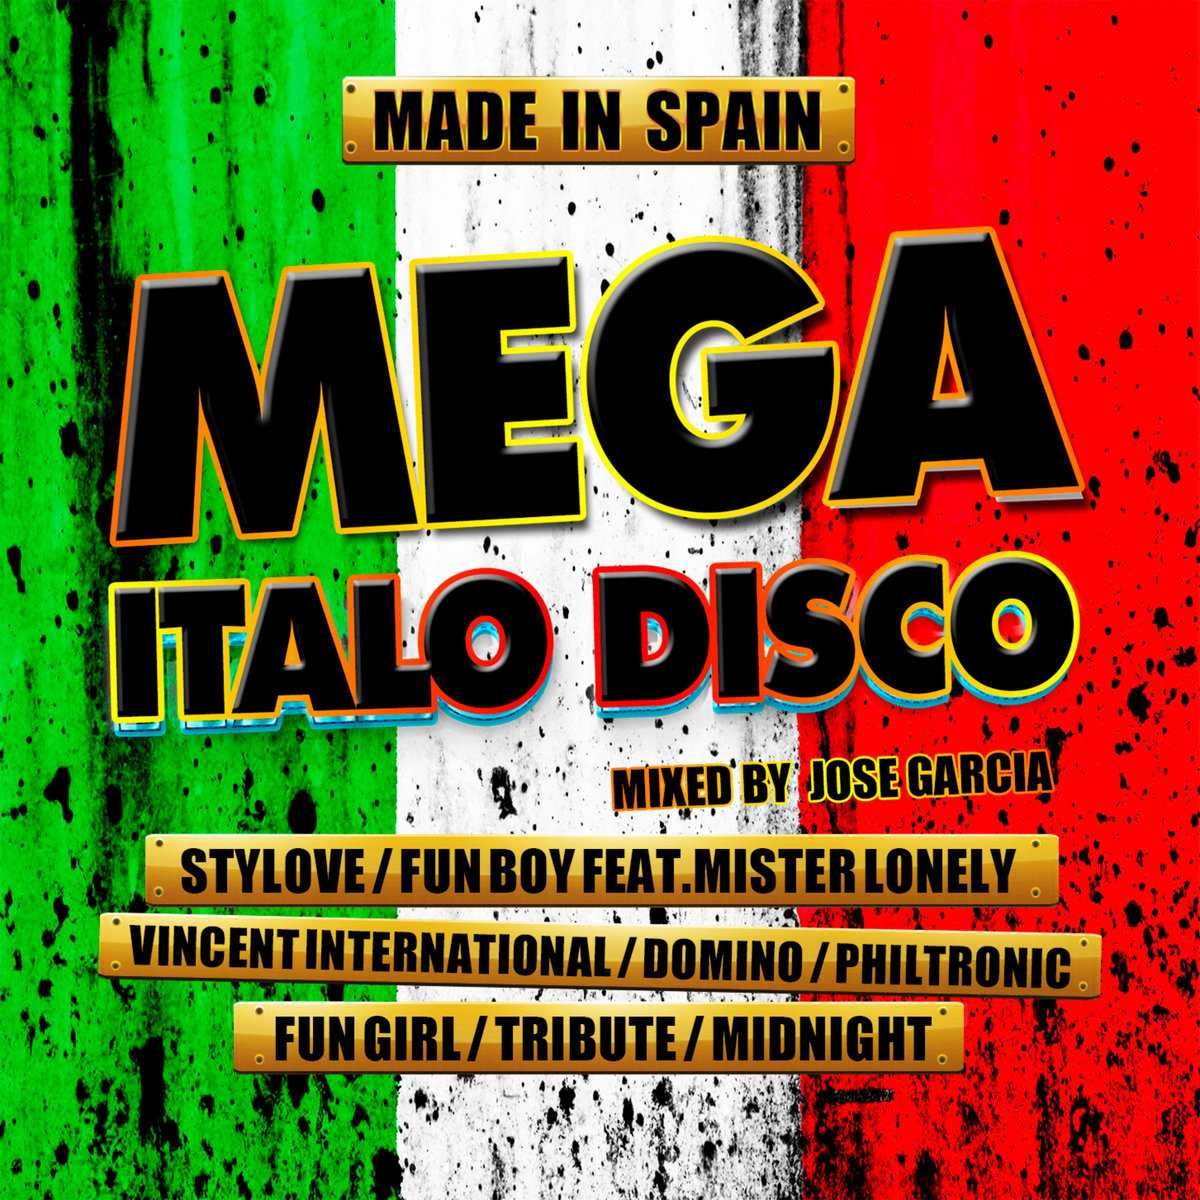 Mega Italo Disco Made In Spain (2 CD) (SPAIN)